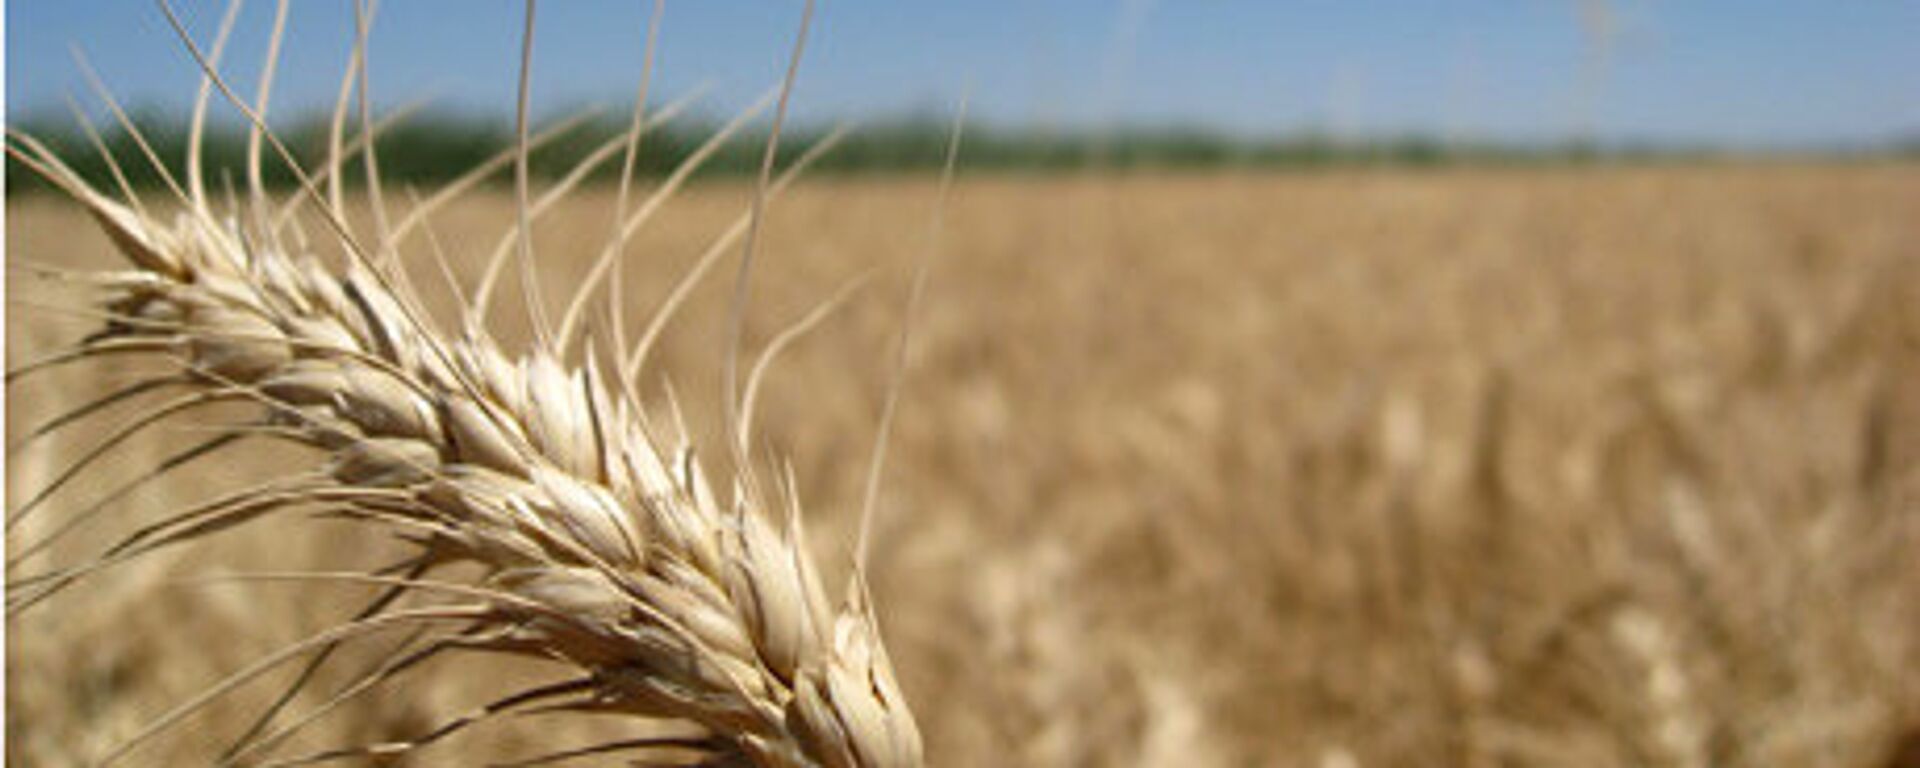 La récolte de céréales en 2012 est estimée à 94 mln tonnes - Sputnik Afrique, 1920, 02.11.2022